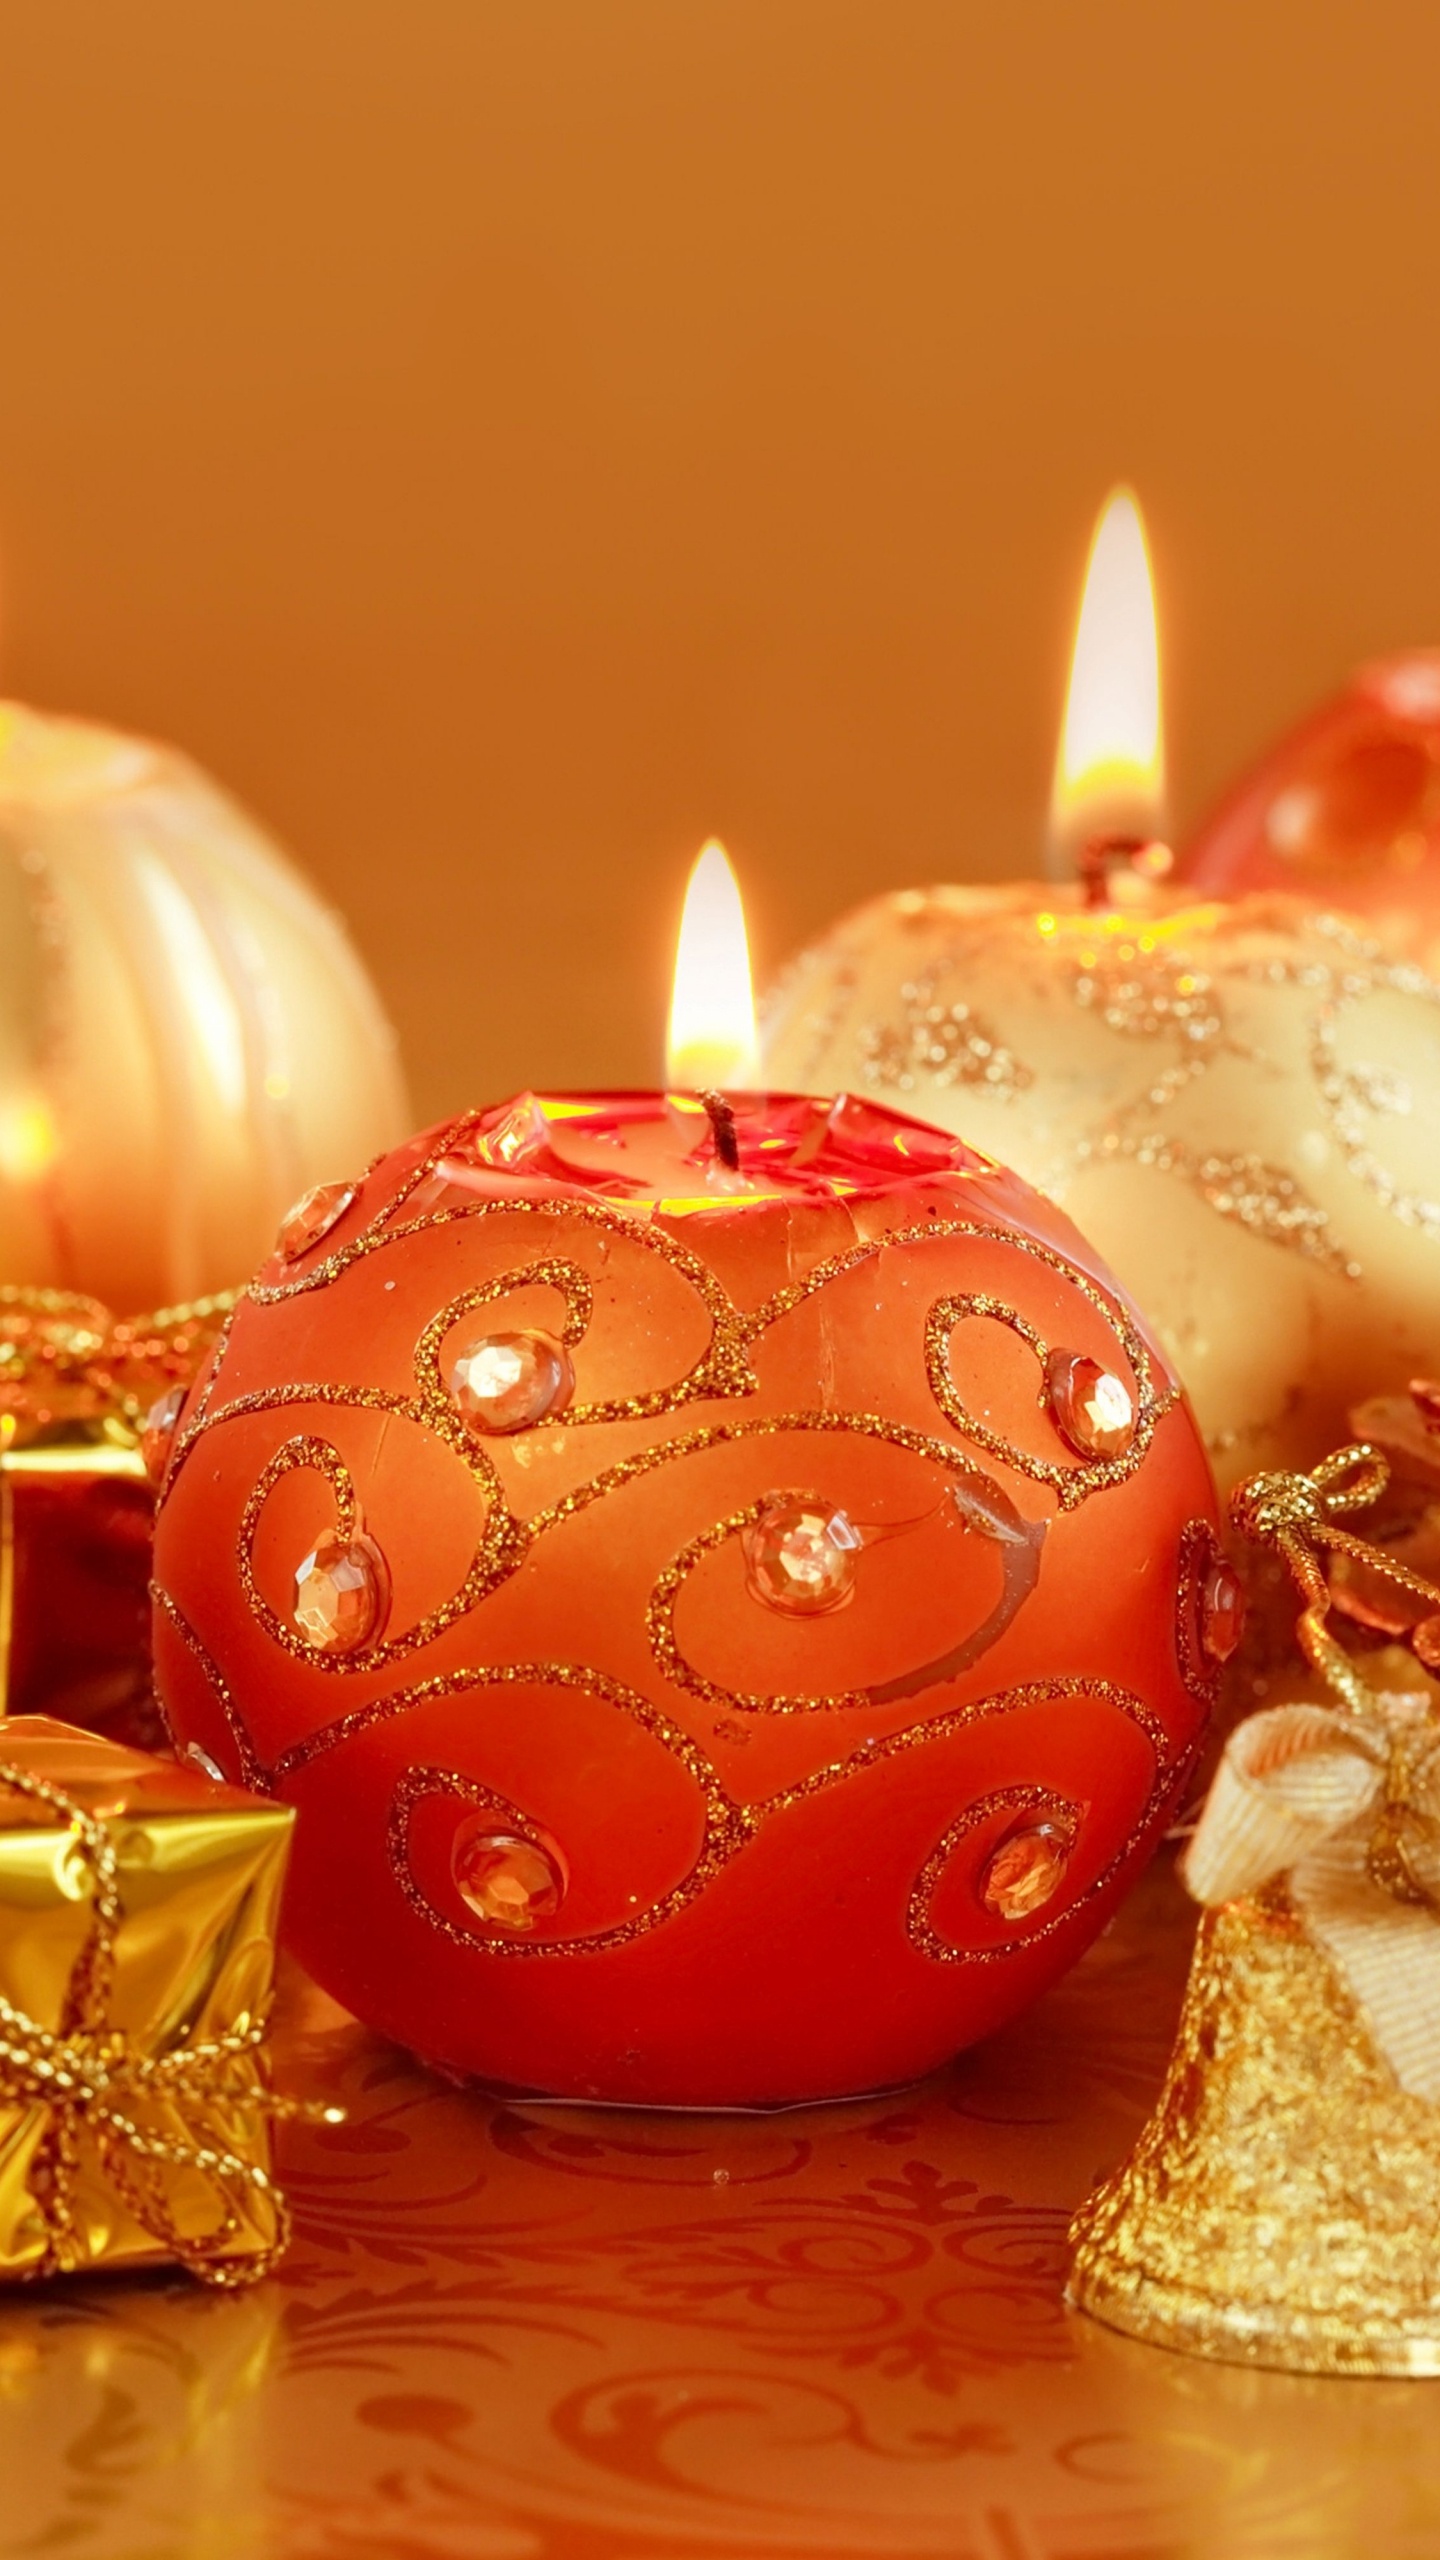 圣诞节那天, 新的一年, 仍然生活, 圣诞节的装饰品, 橙色 壁纸 1440x2560 允许